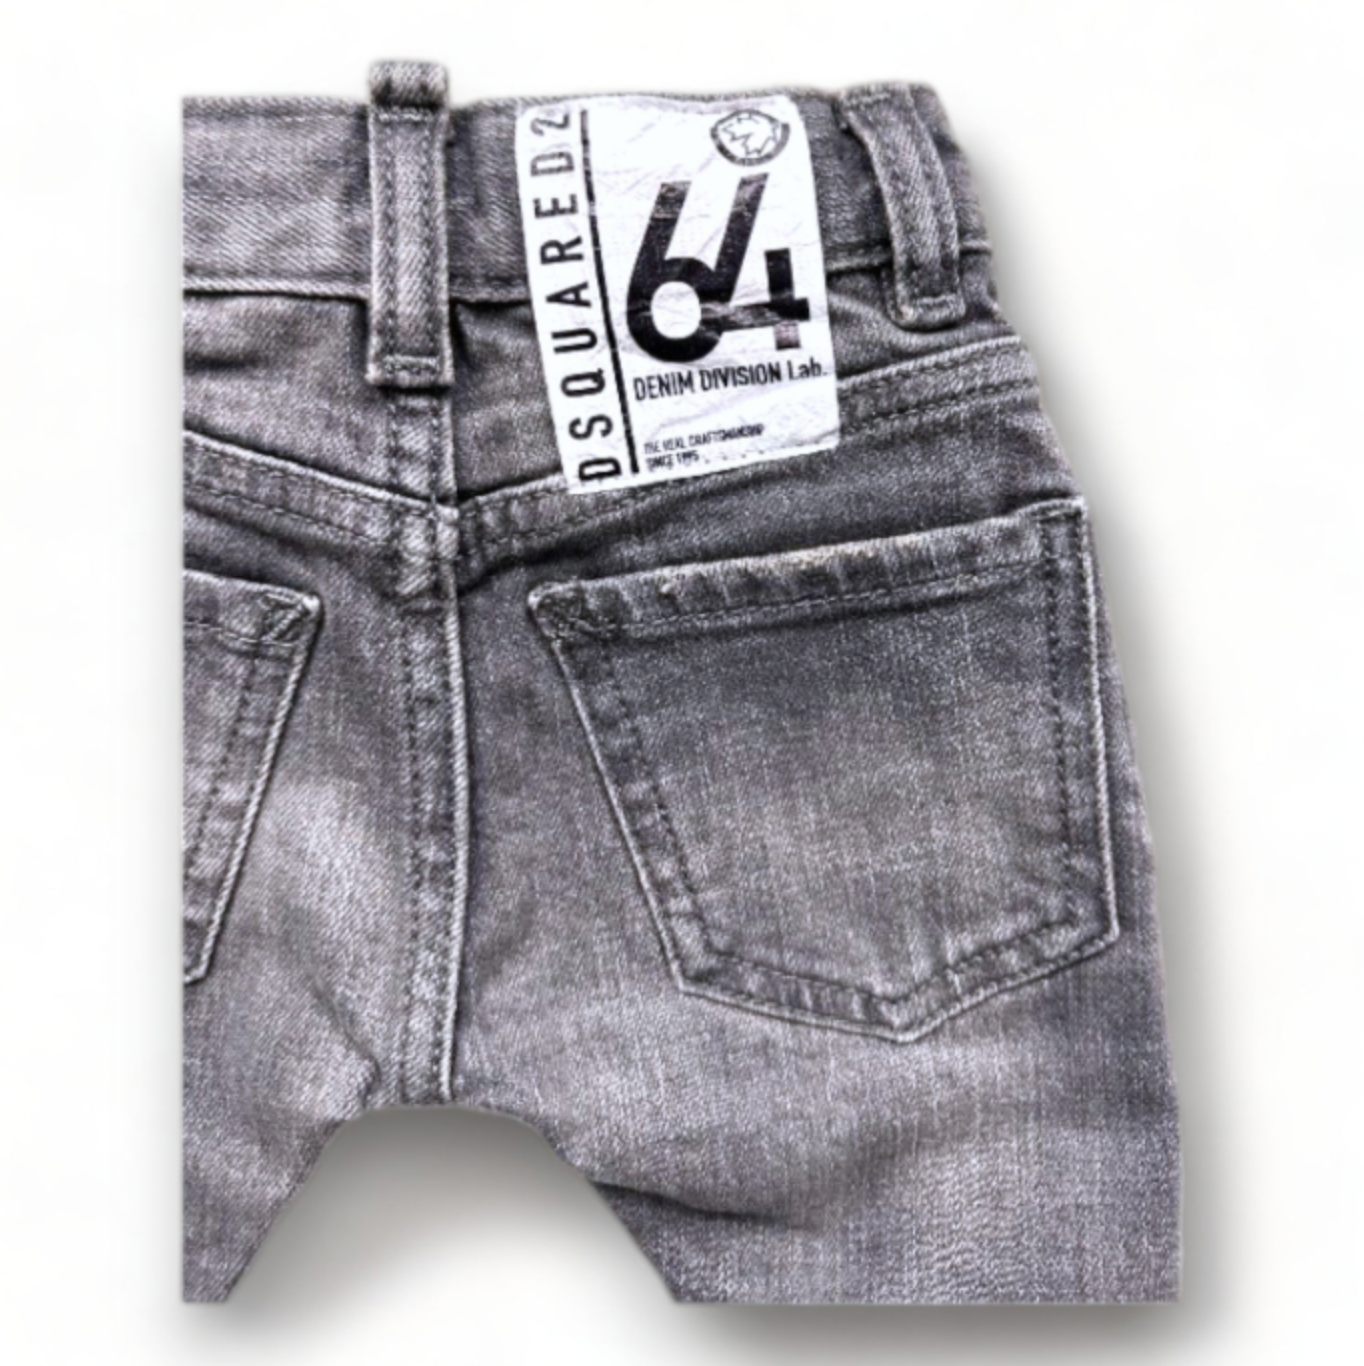 DSQUARED2 - Pantalon en jean gris neuf - 3 mois